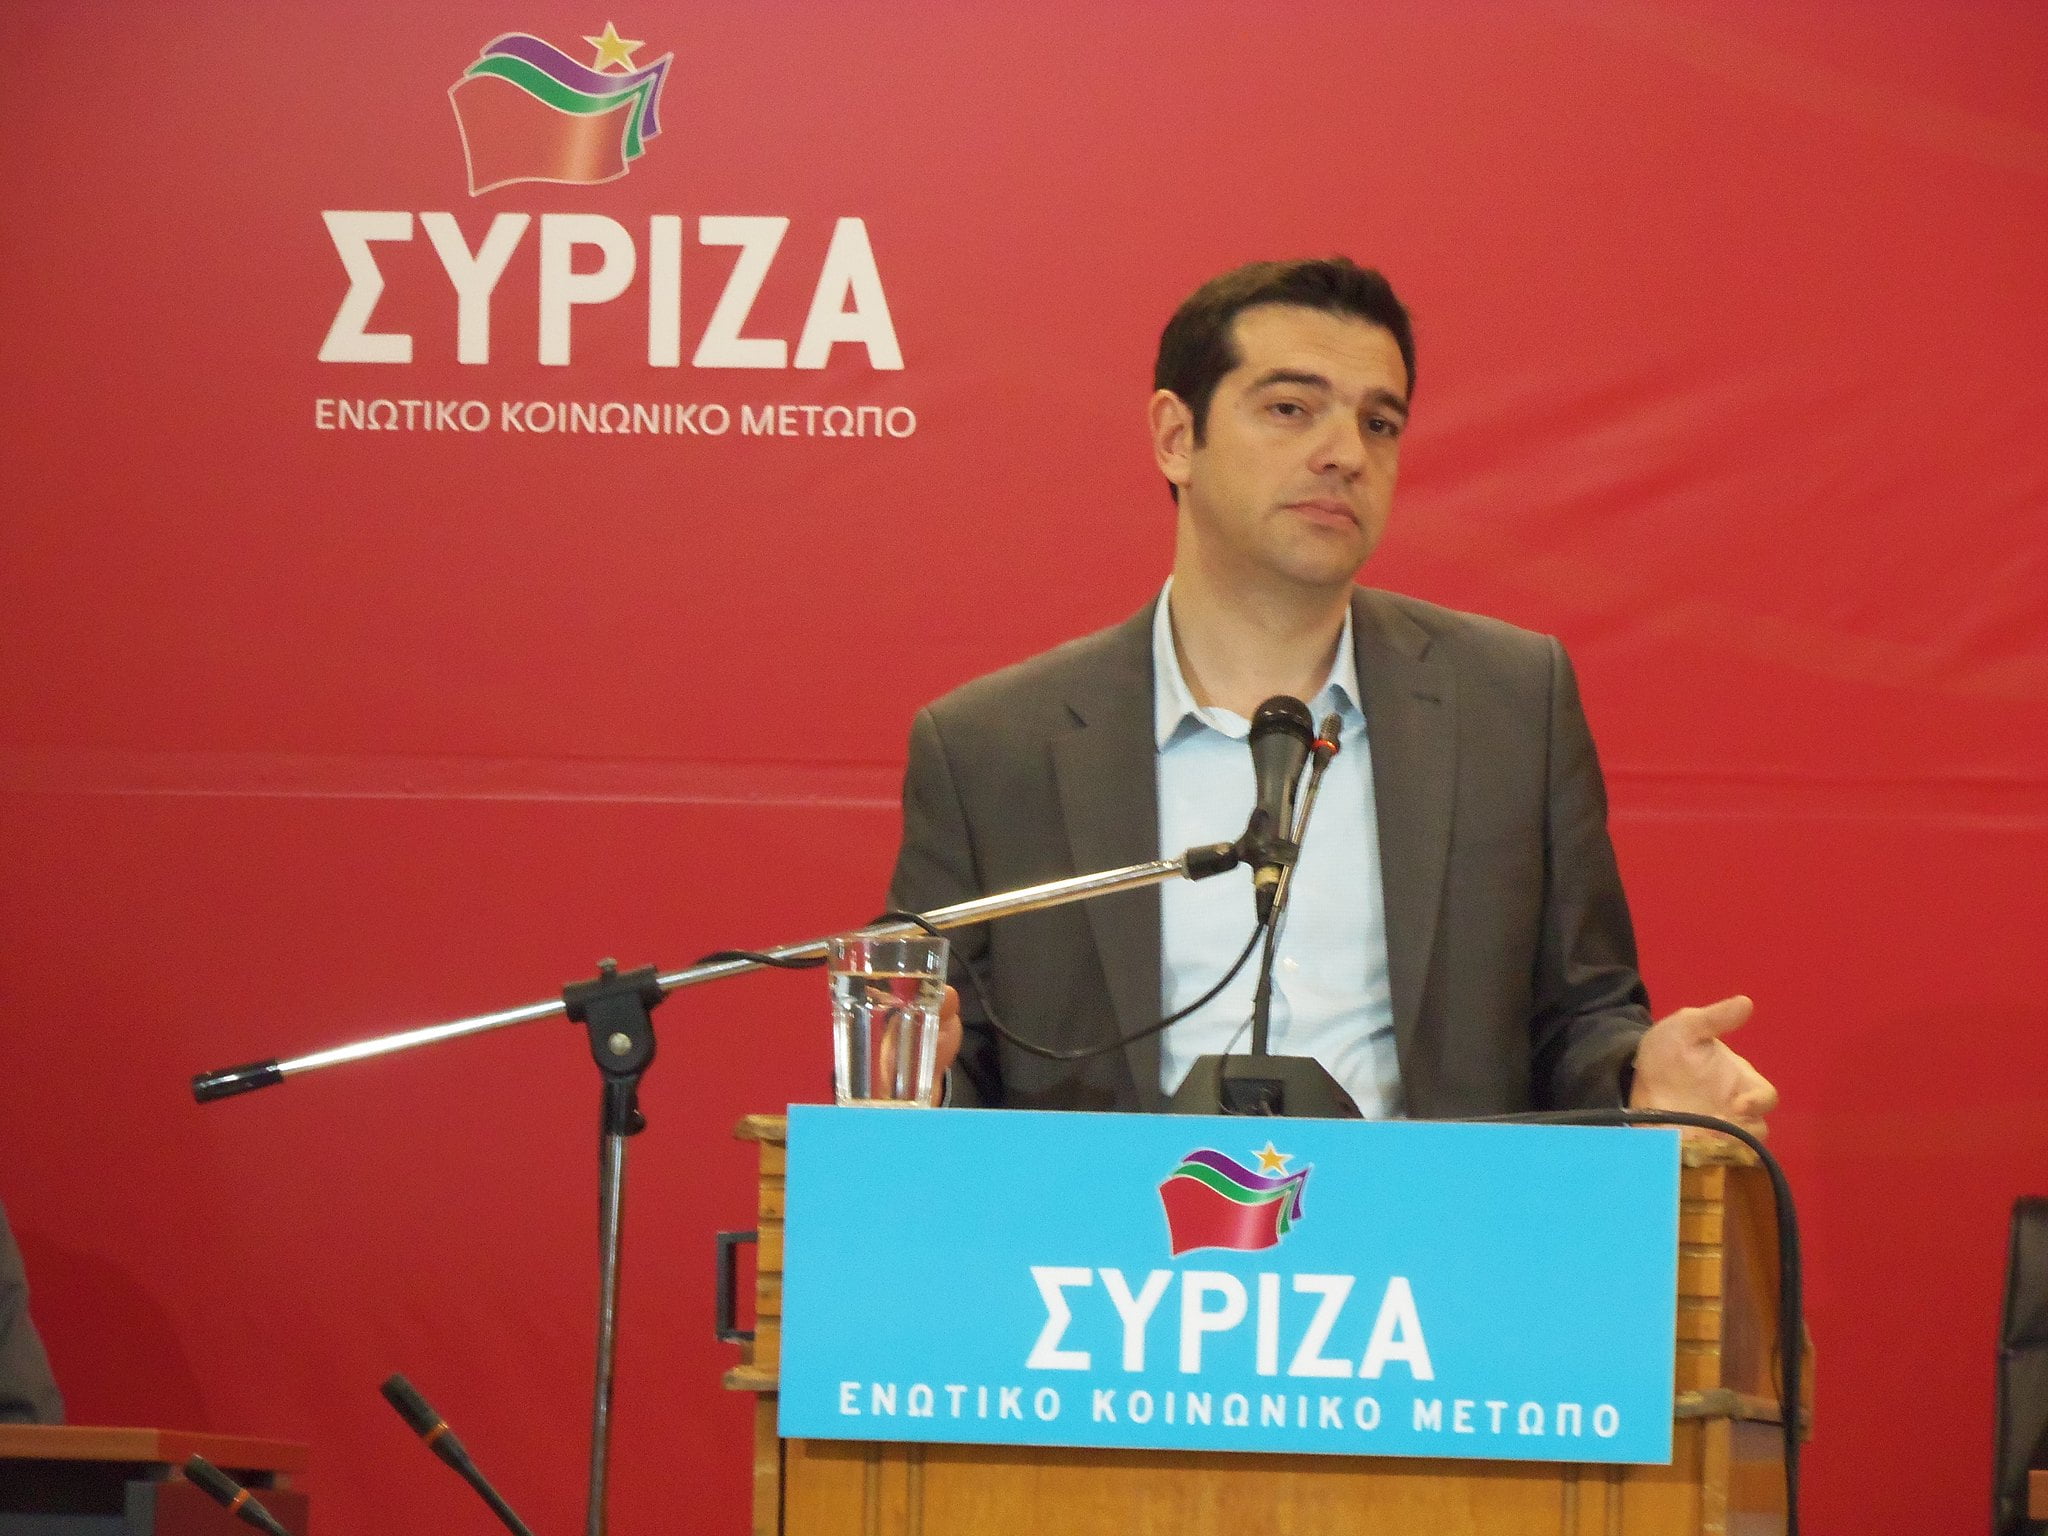 Bei Syriza ist die Ära Tsipras vorbei